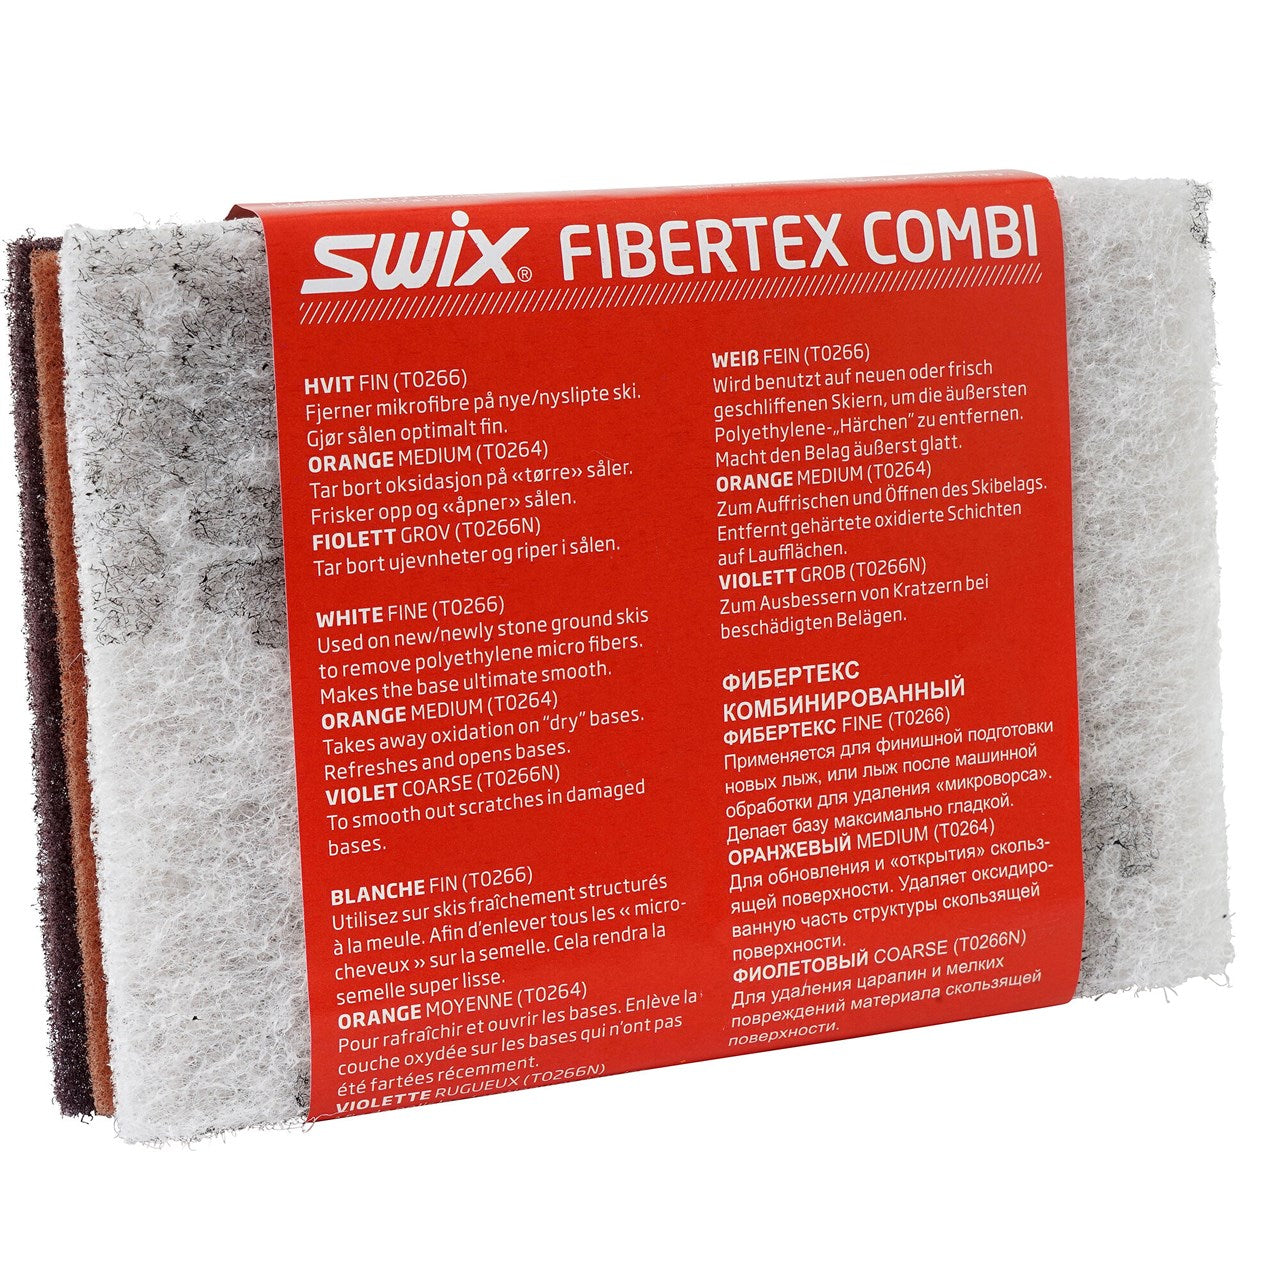 Swix Fibertex Combi WAXING TOOLS Swix   